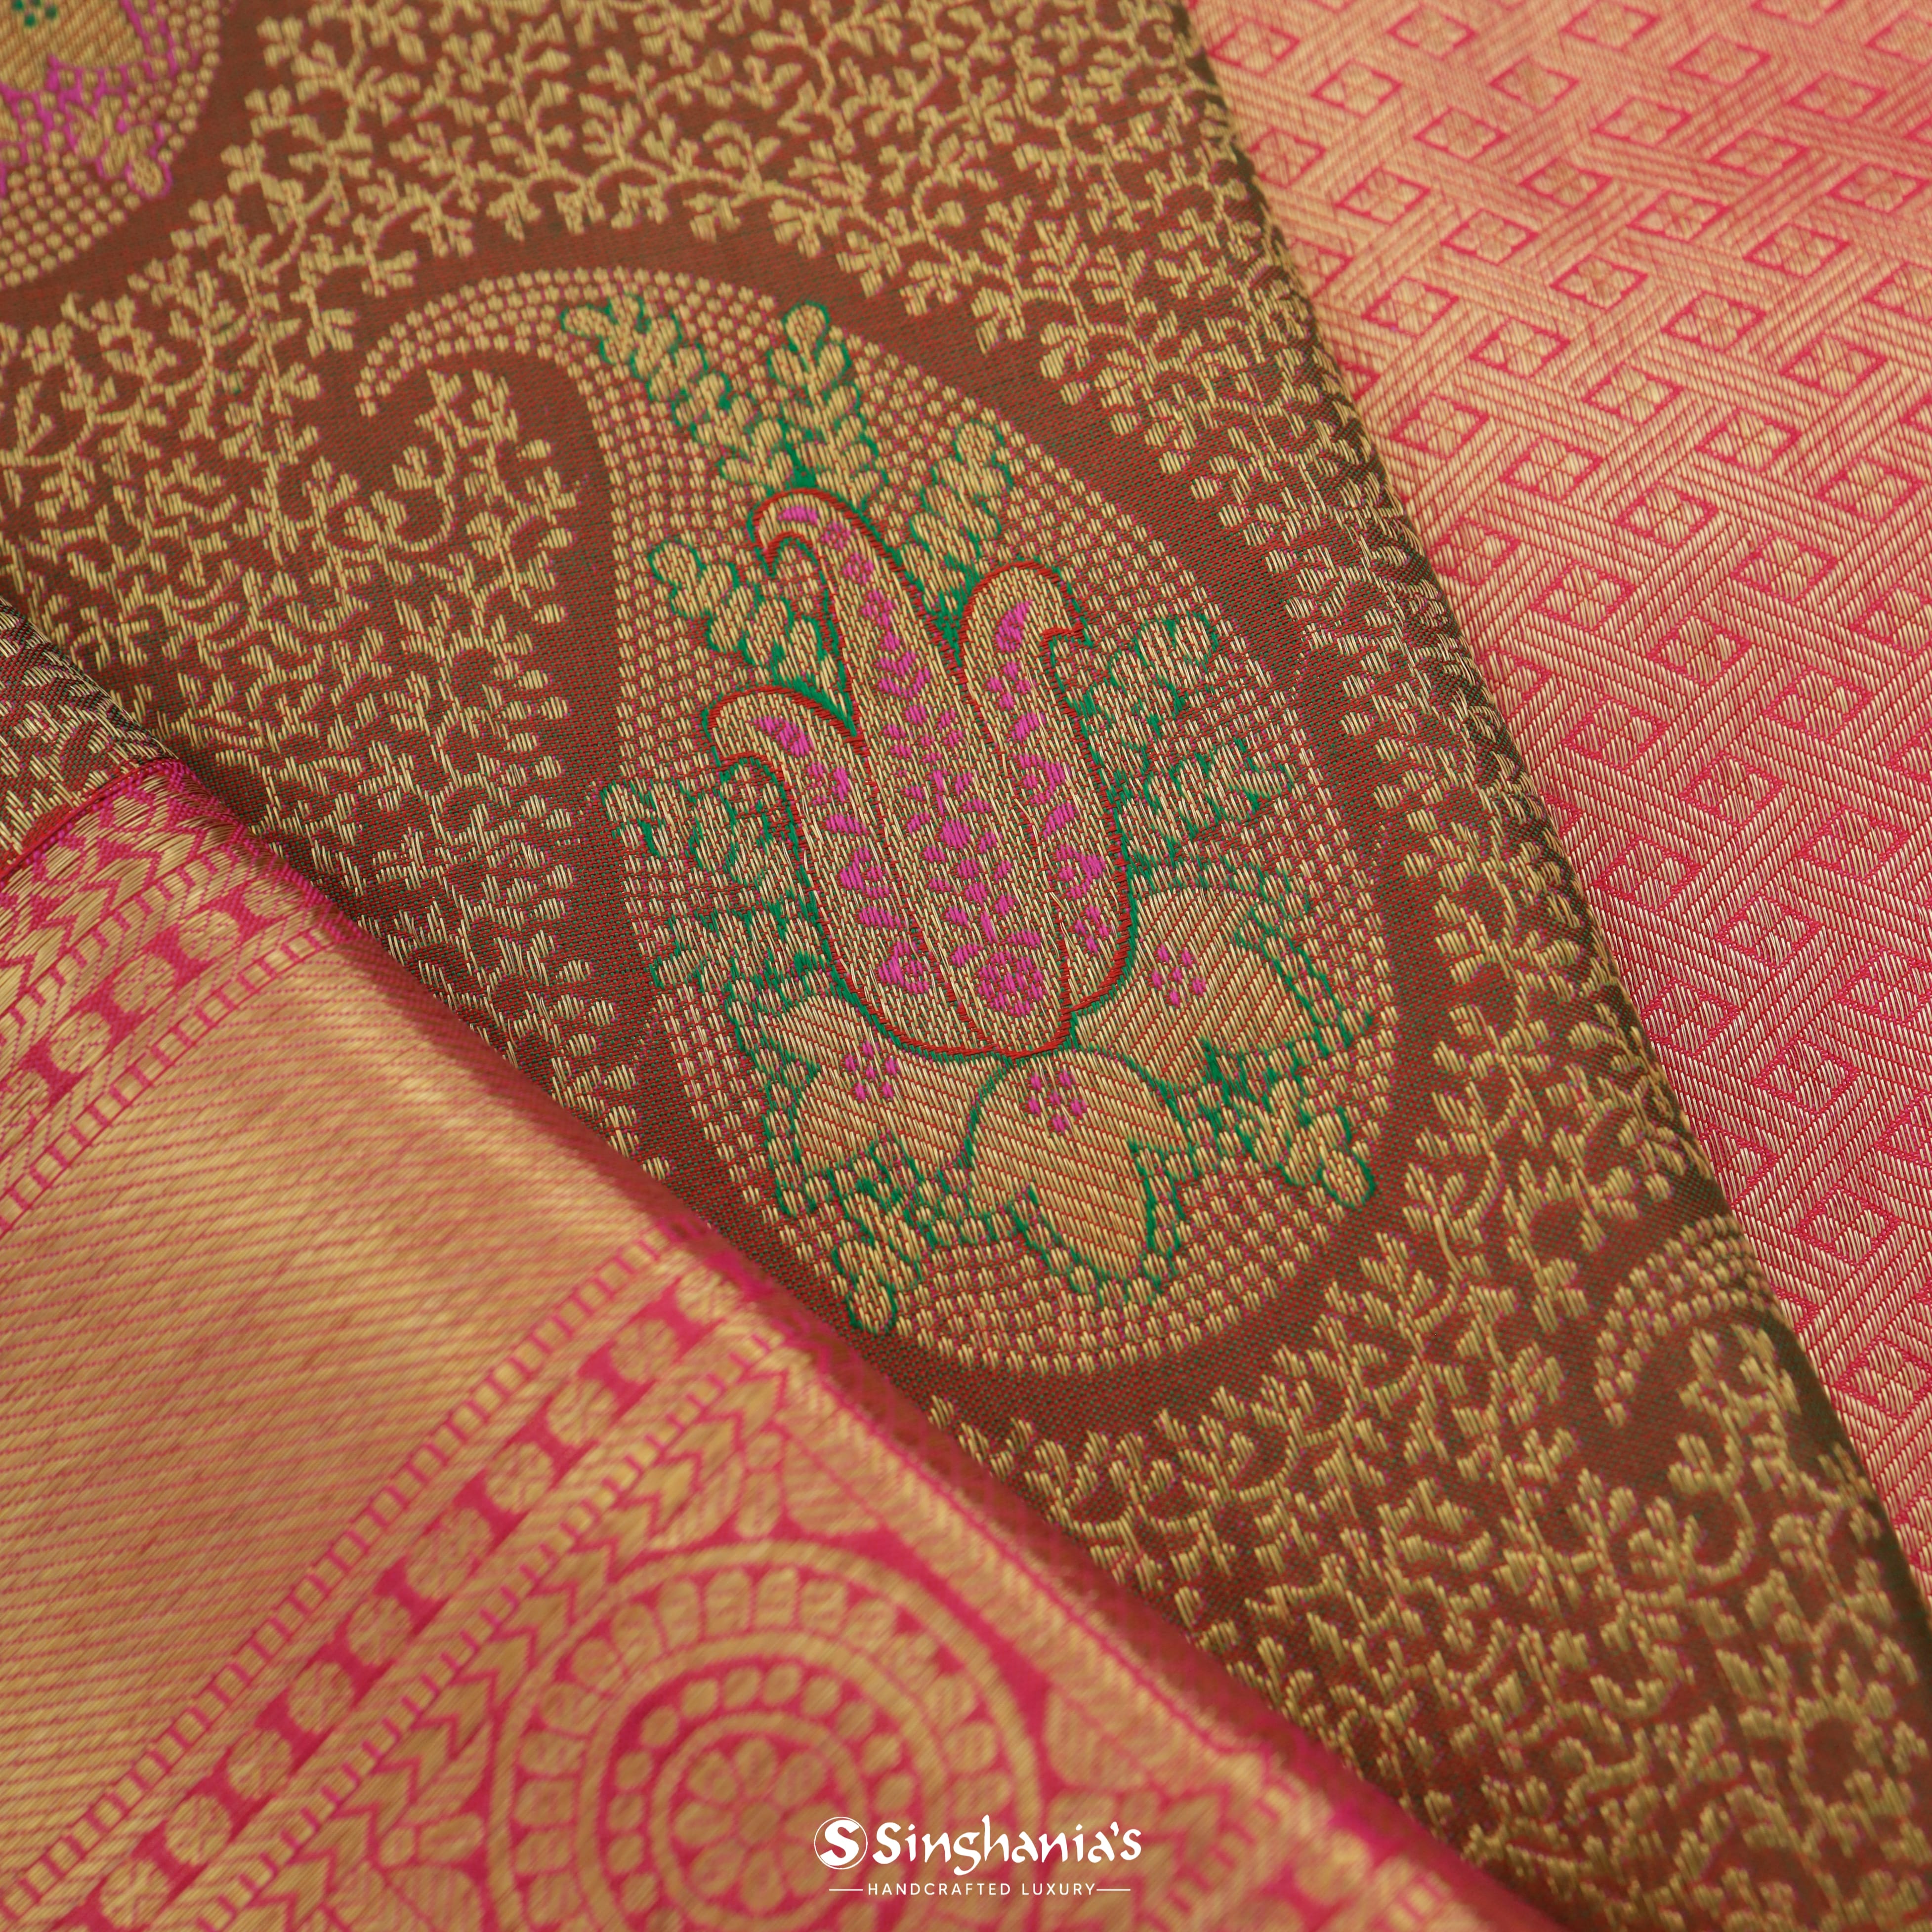 Chocolate Brown Kanjivaram Silk Saree With Mangai Motif Pattern